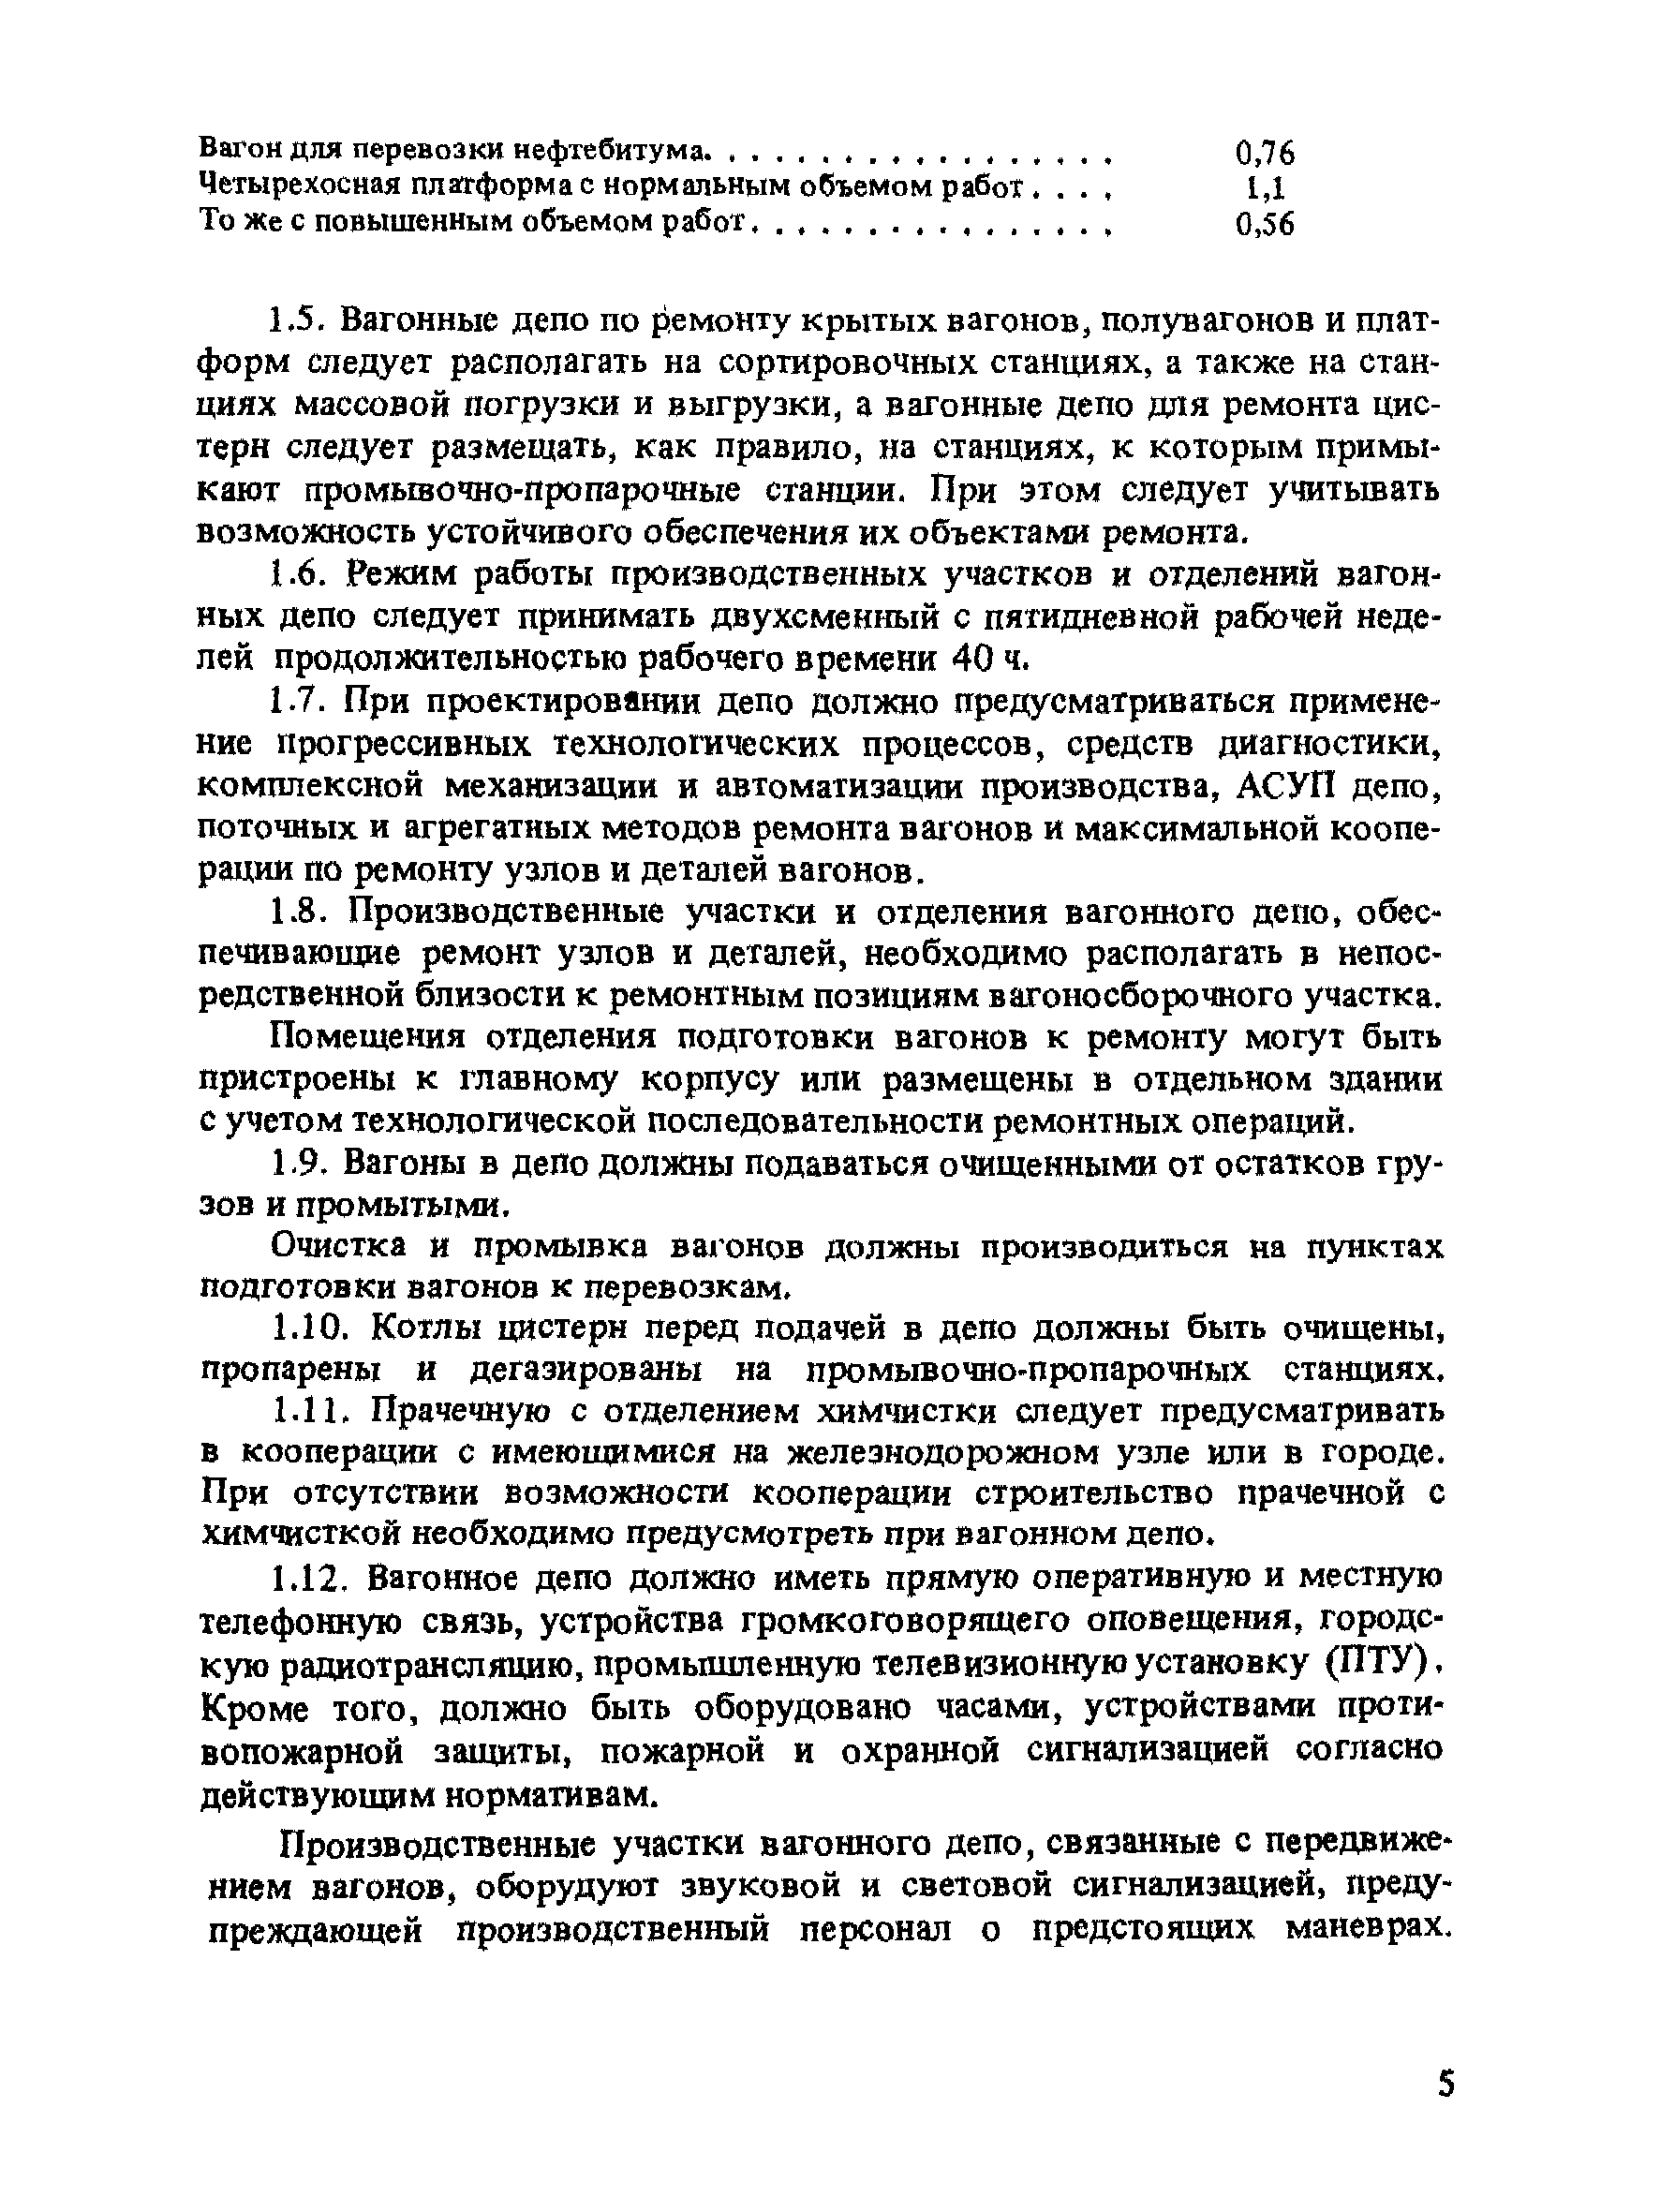 ВНТП 08-90